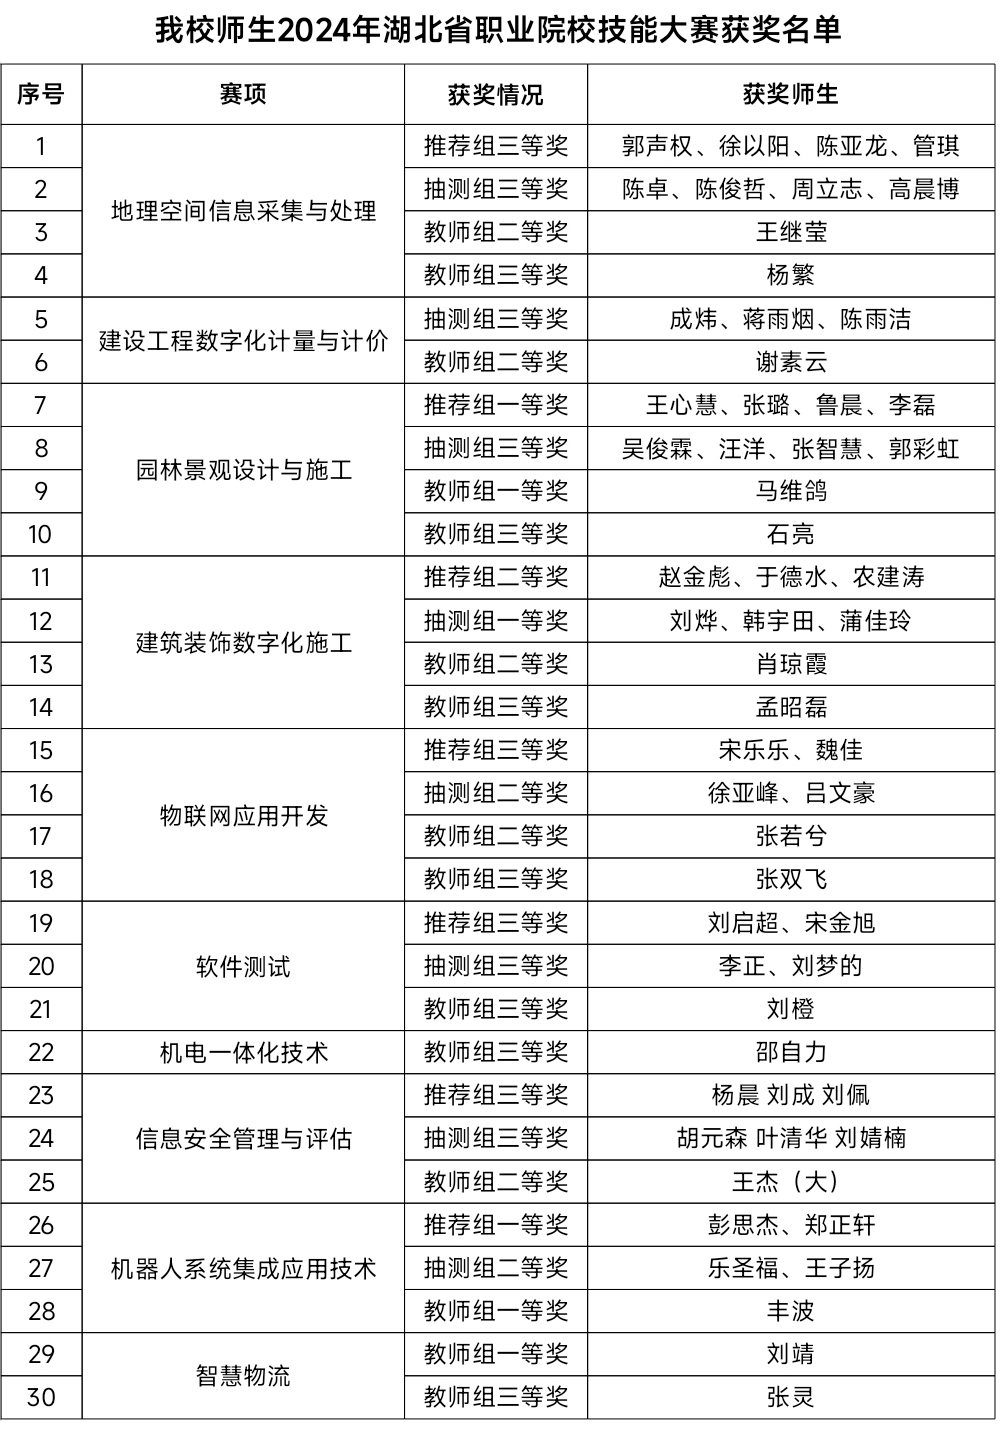 5我校师生2024年湖北省职业院校技能大赛获奖名单.jpg